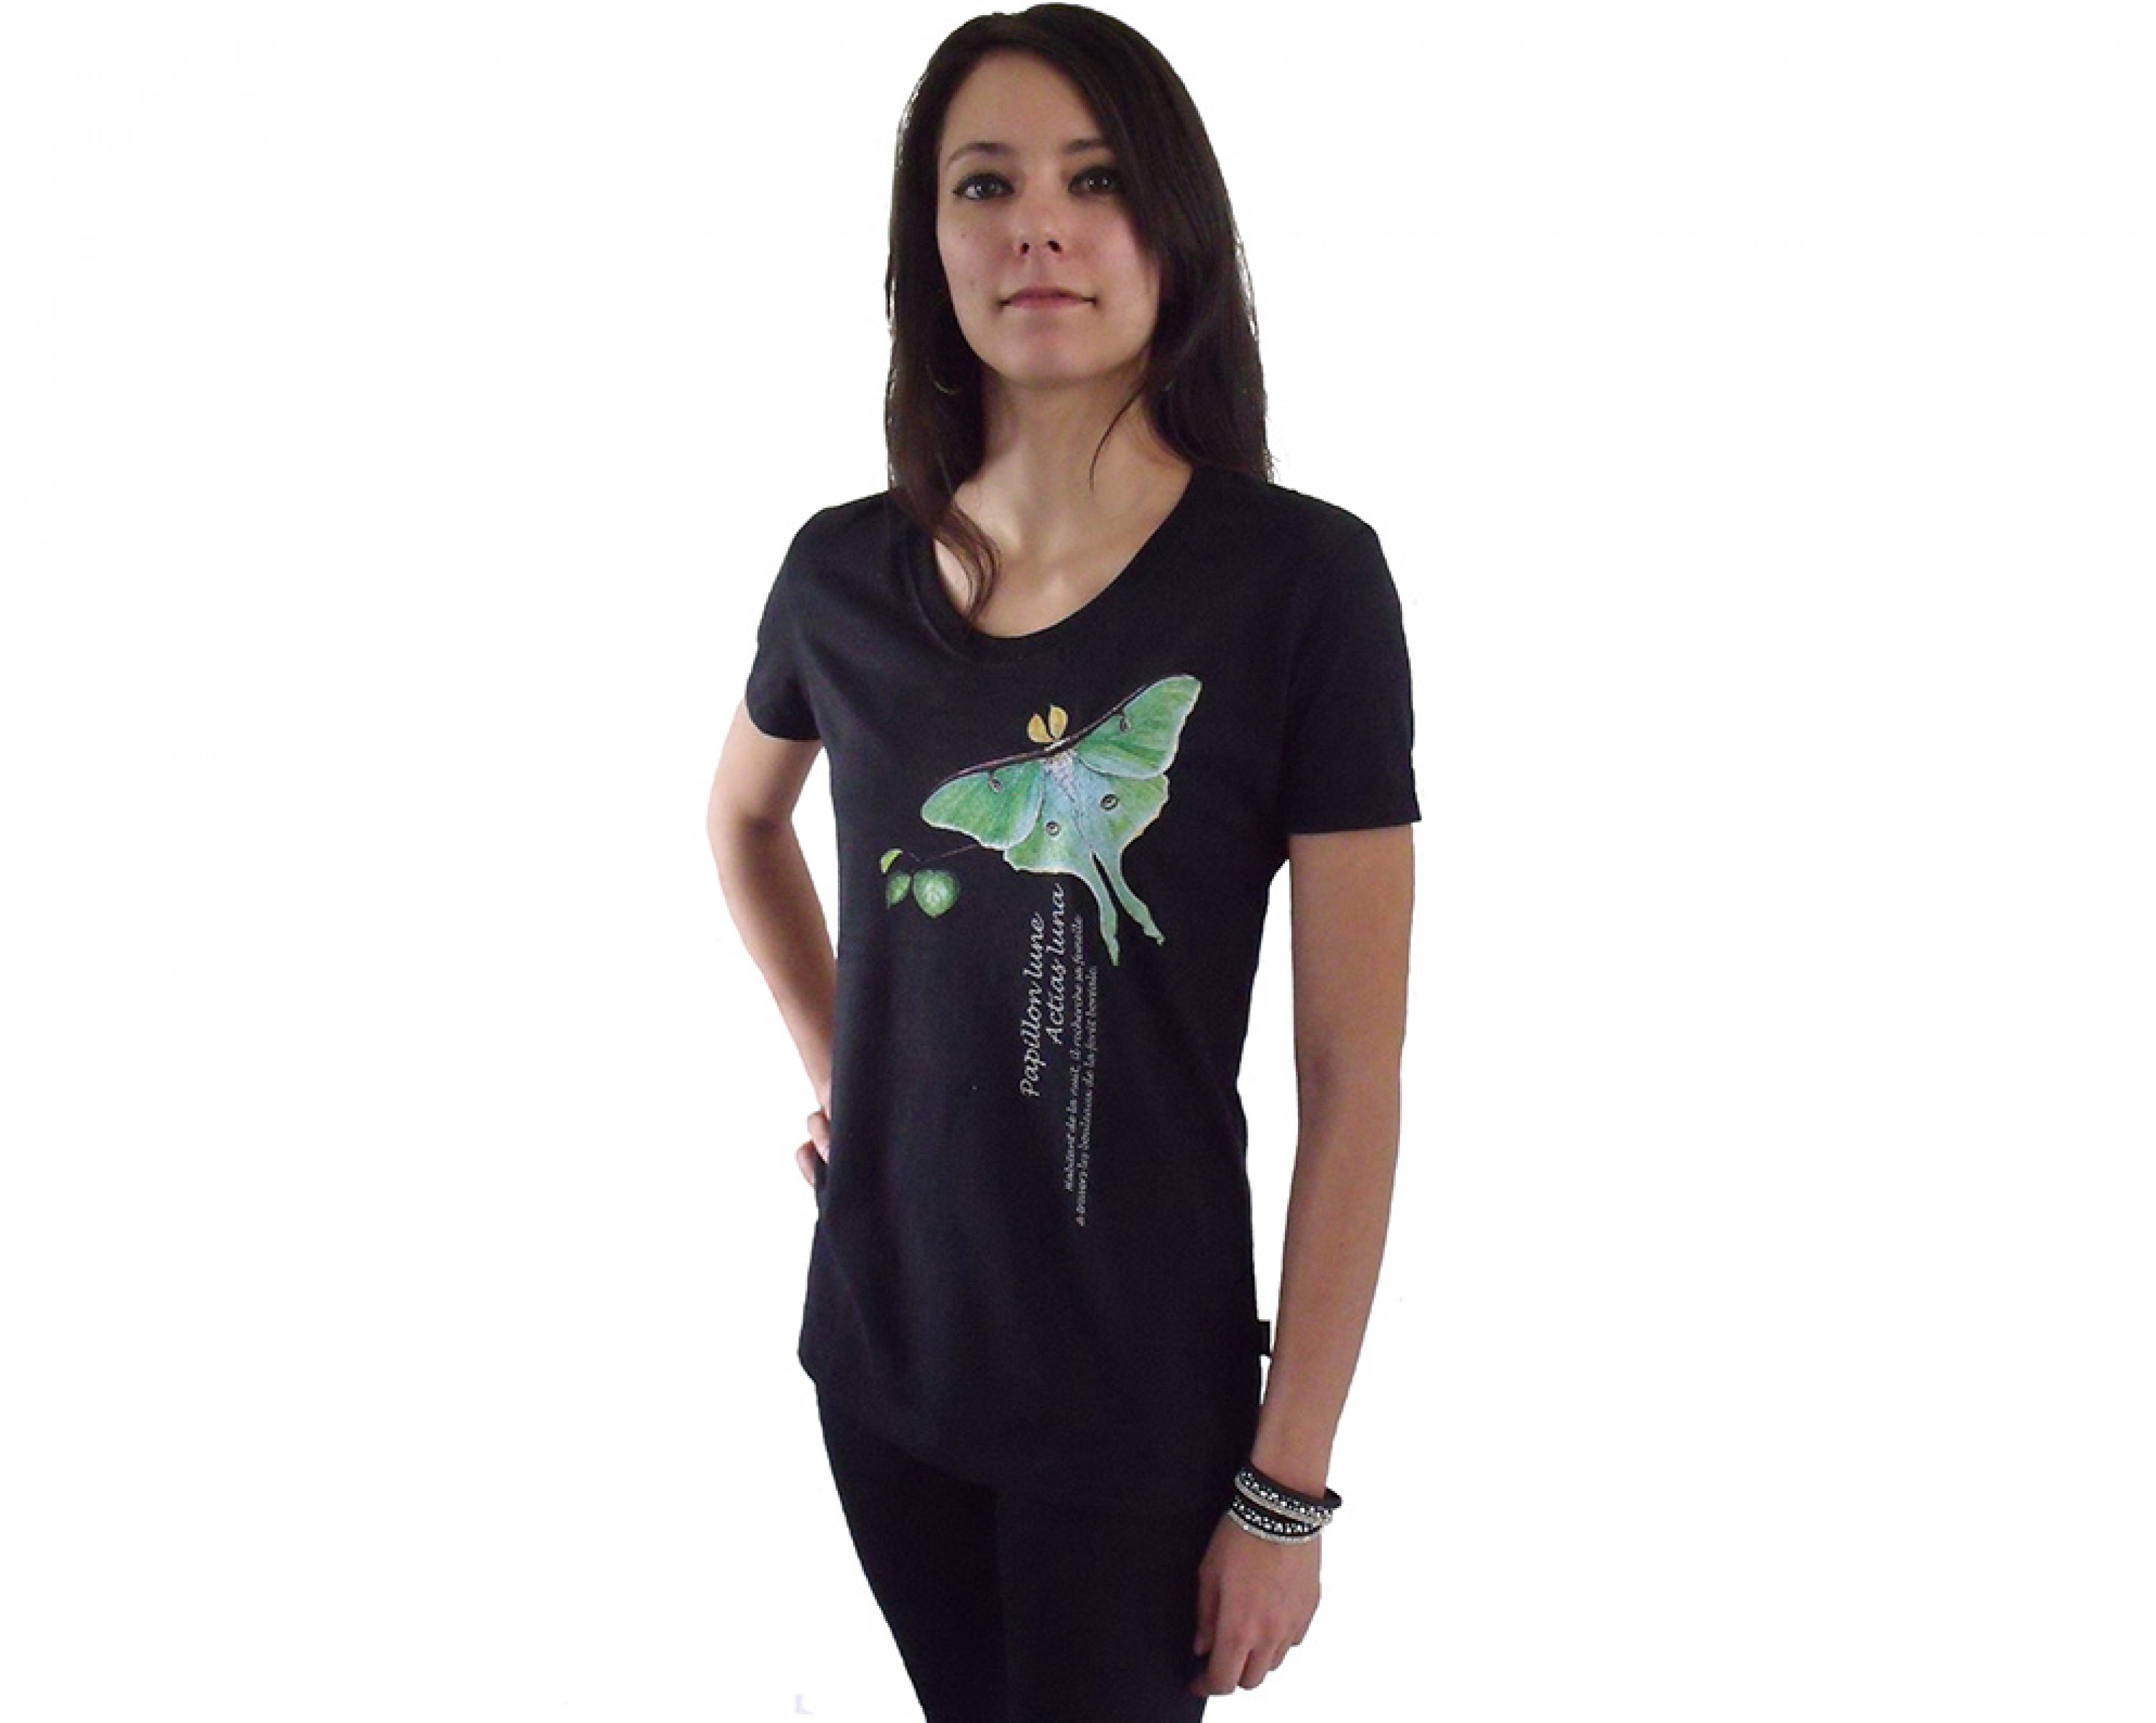 T-shirt femme - Collection papillon